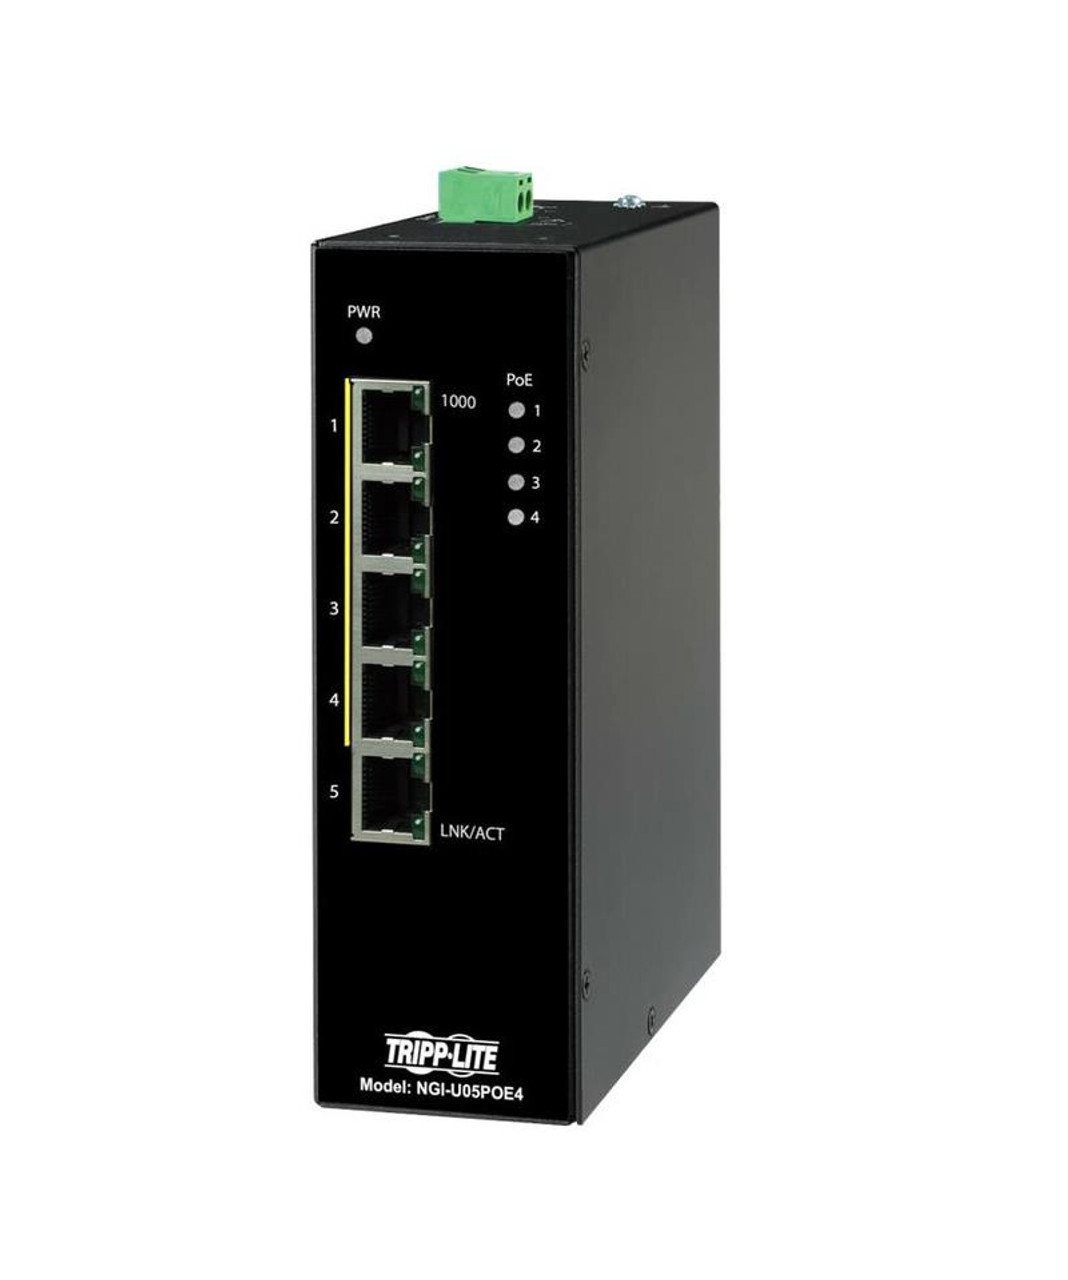 NGI-U05POE4 Tripp Lite NGI-U05POE4 Ethernet Switch - 5 Ports - Gigabit Ethernet - 10/100/1000Base-T - TAA Compliant - 2 Layer Supported - 14 W Power Consumption